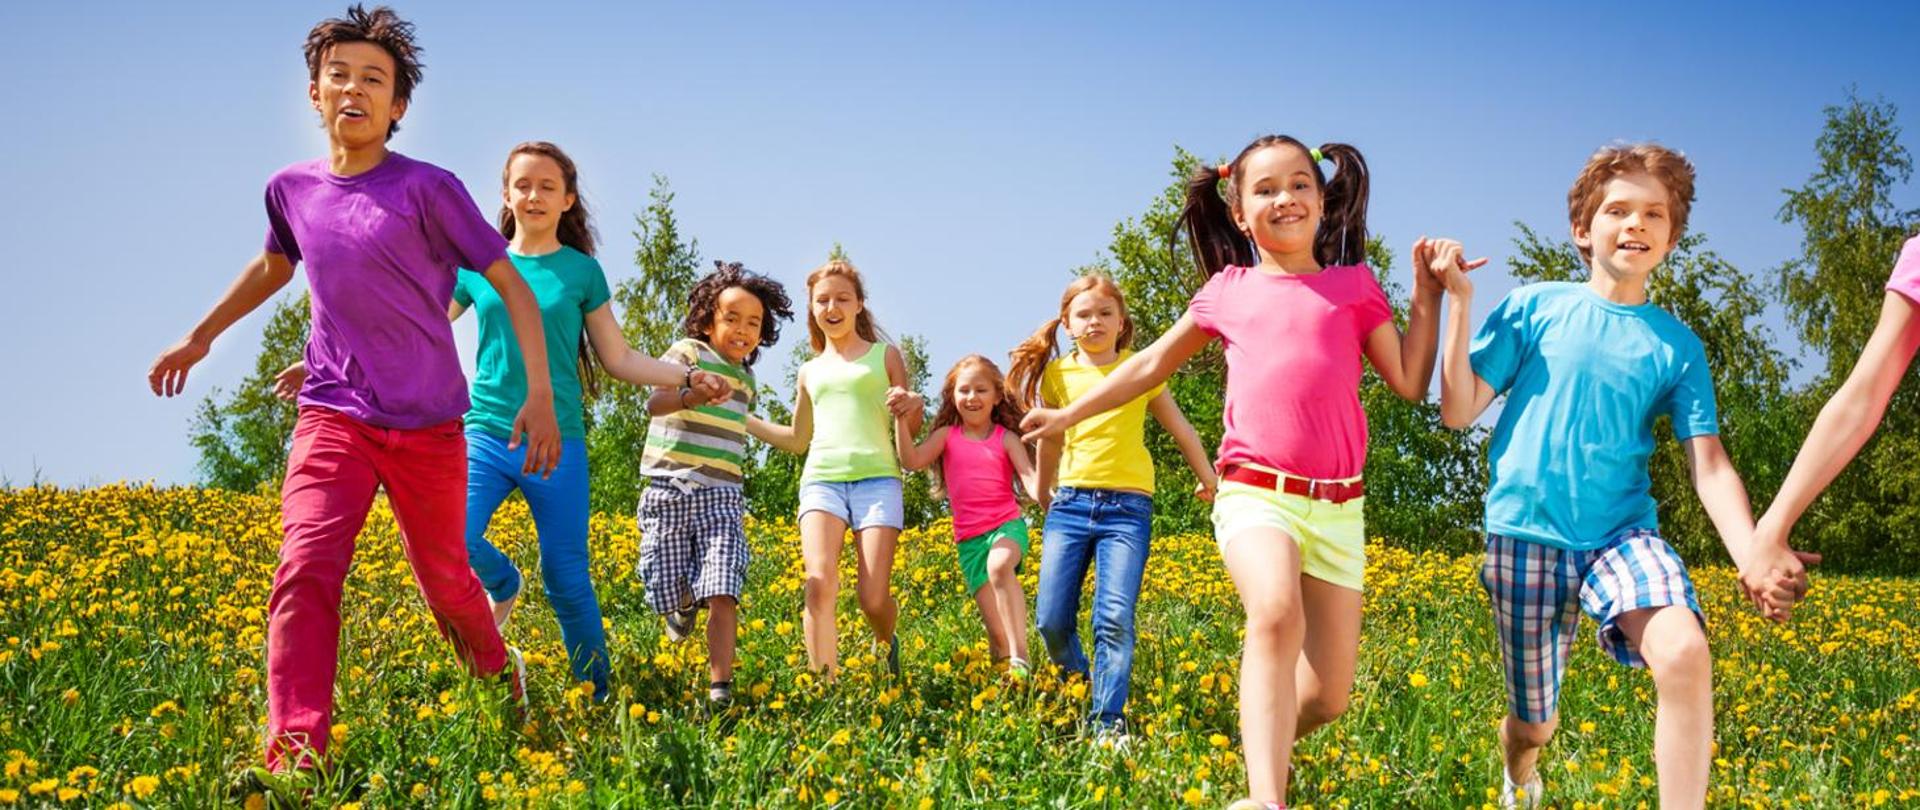 grafika kolorowa, zielona łąka i żółte kwiatki mlecze po której biegają chłopcy i dziewczynki ubrani w kolorowe stroje